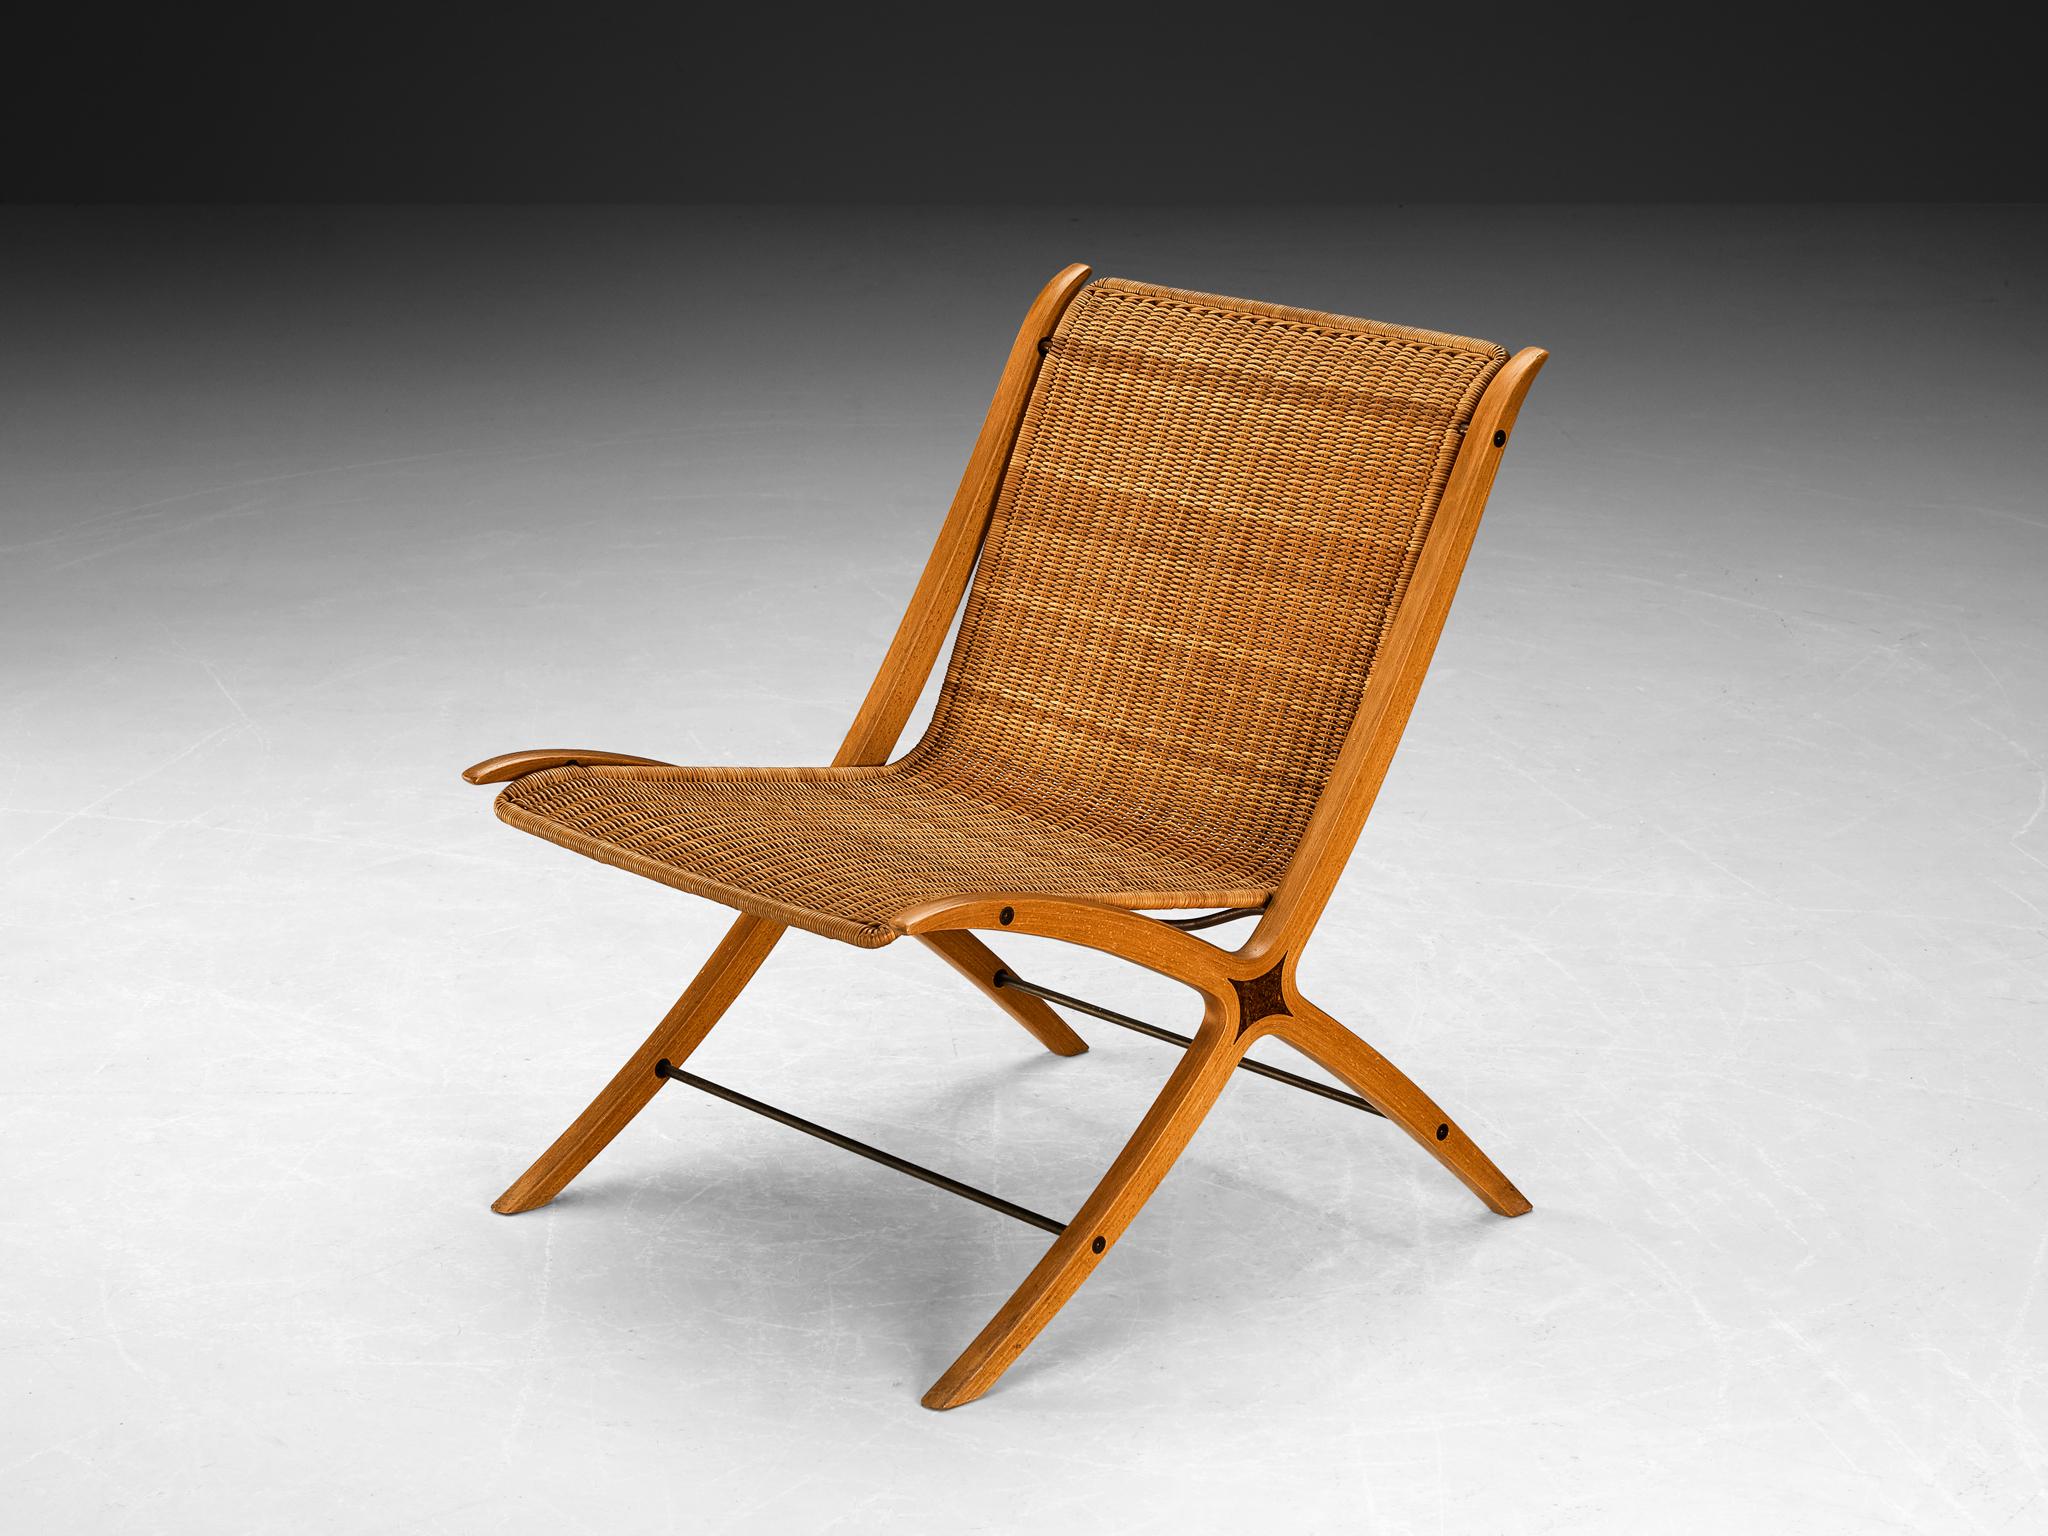 Peter Hvidt & Orla Mølgaard Nielsen pour Fritz Hansen, 'X-chair model '6103', canne, bois, hêtre, Danemark, conçu en 1958

Cette chaise est, pour des raisons évidentes, surnommée la 